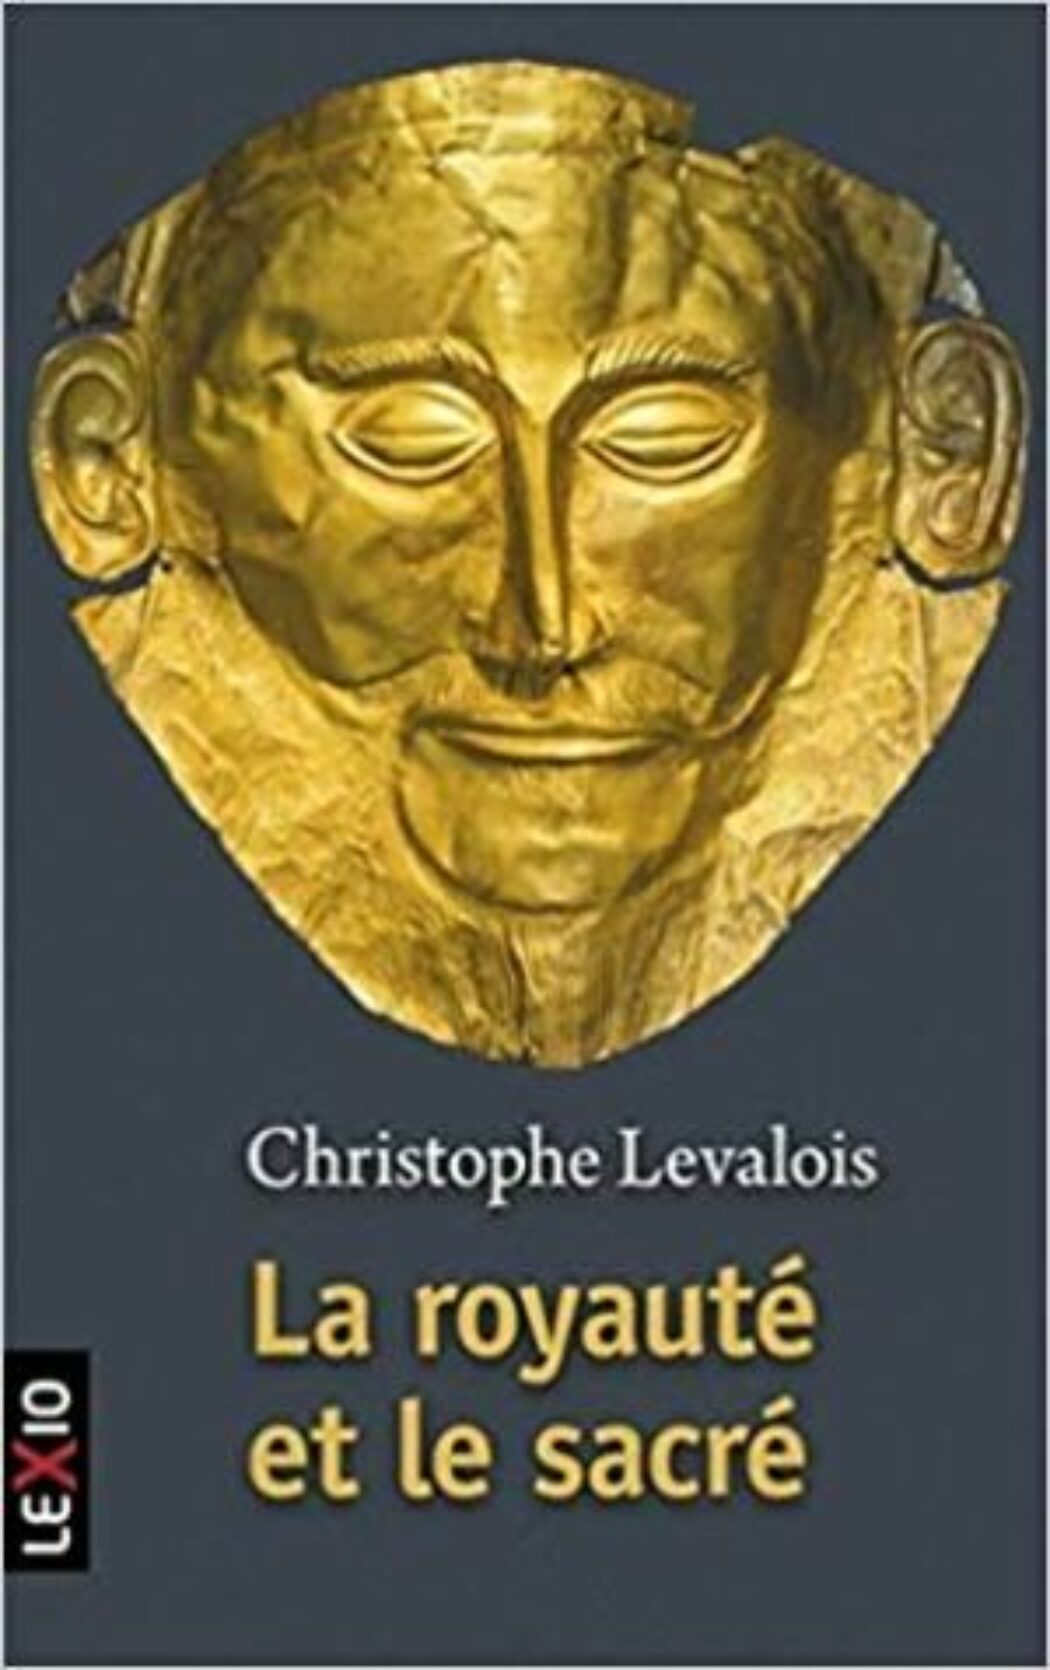 La royauté et le sacré de Christophe Levalois